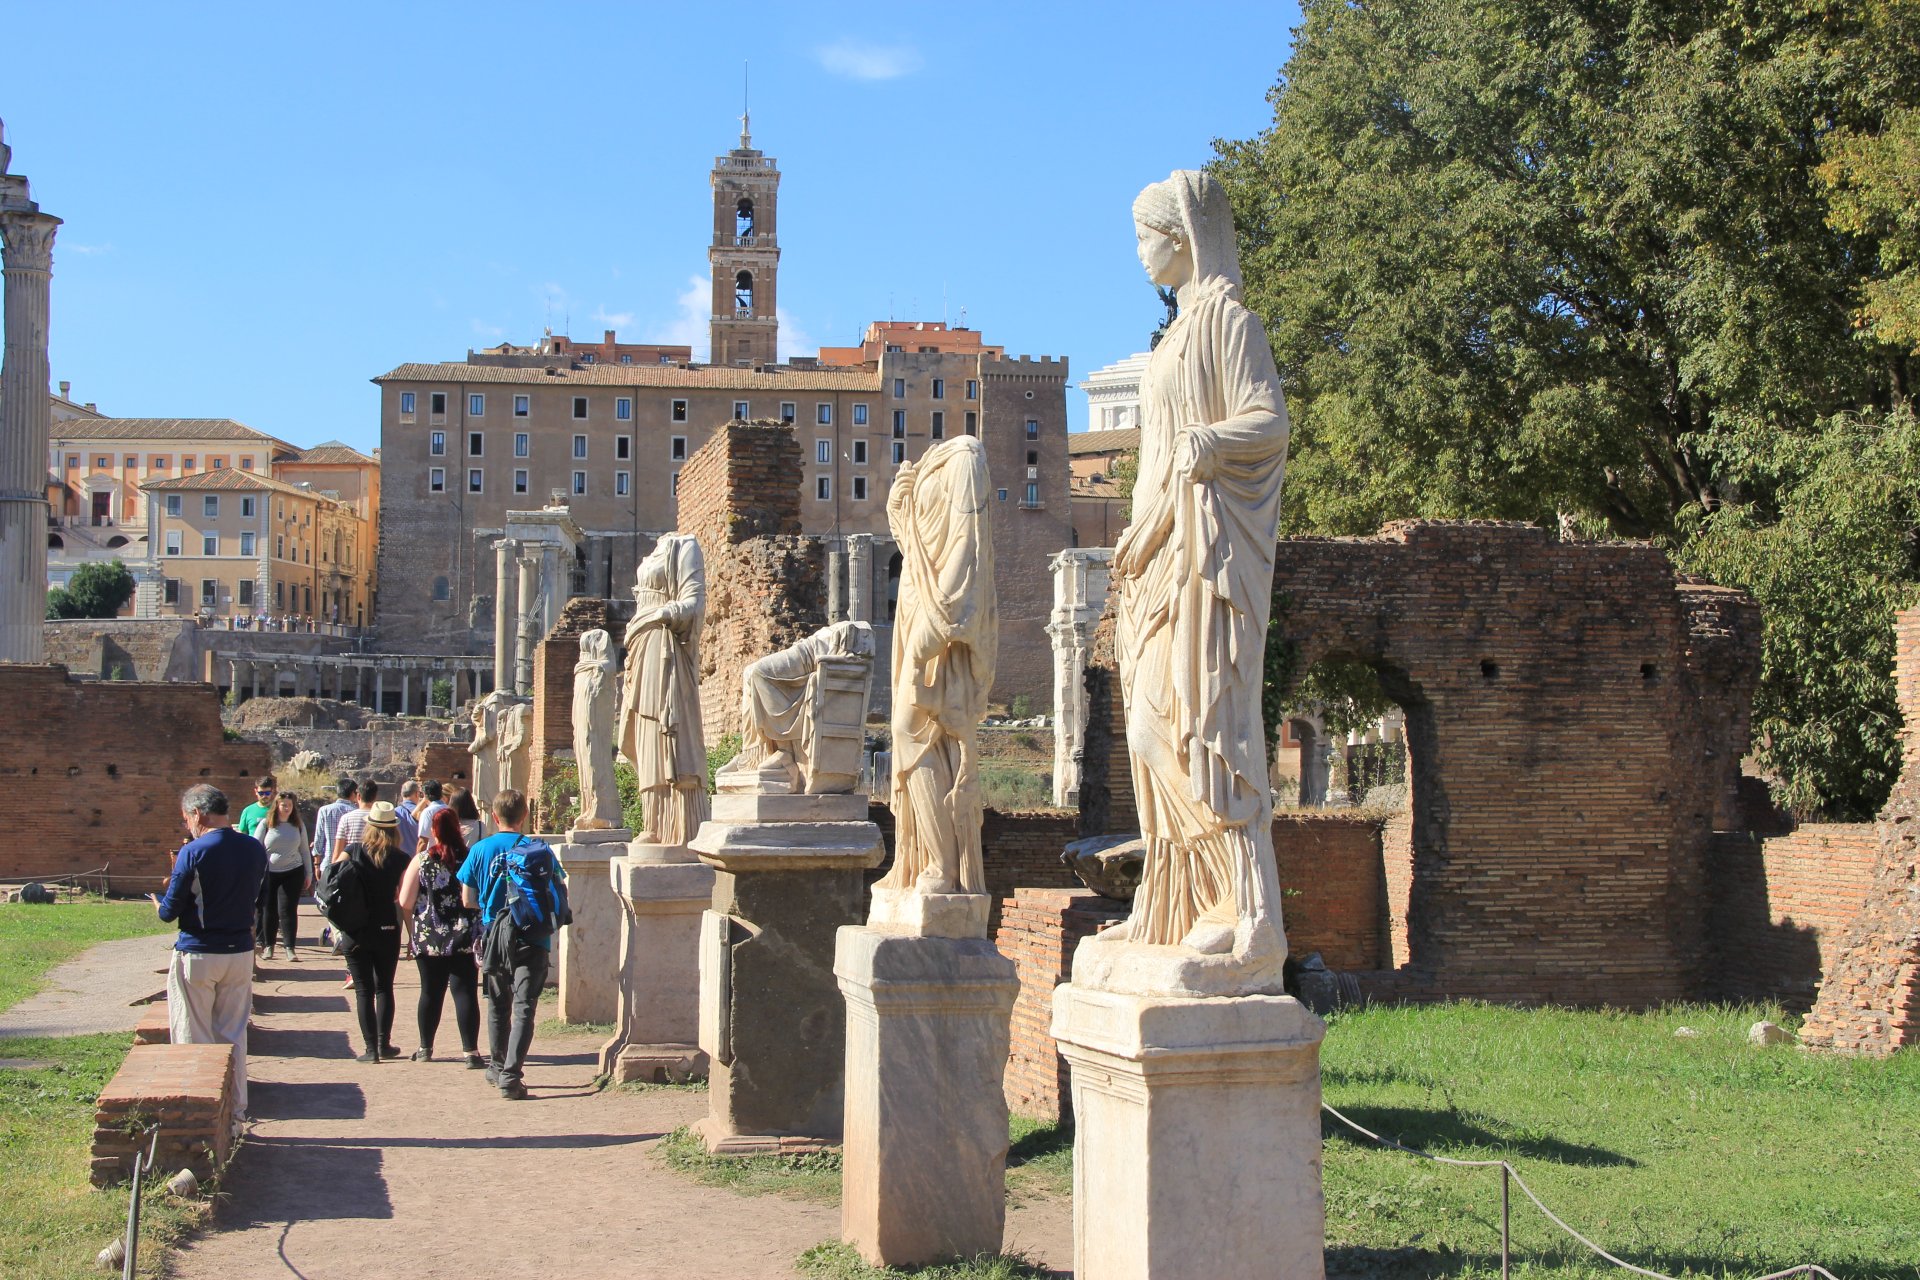 Posągi zdobiące uliczkę na Forum Romanum